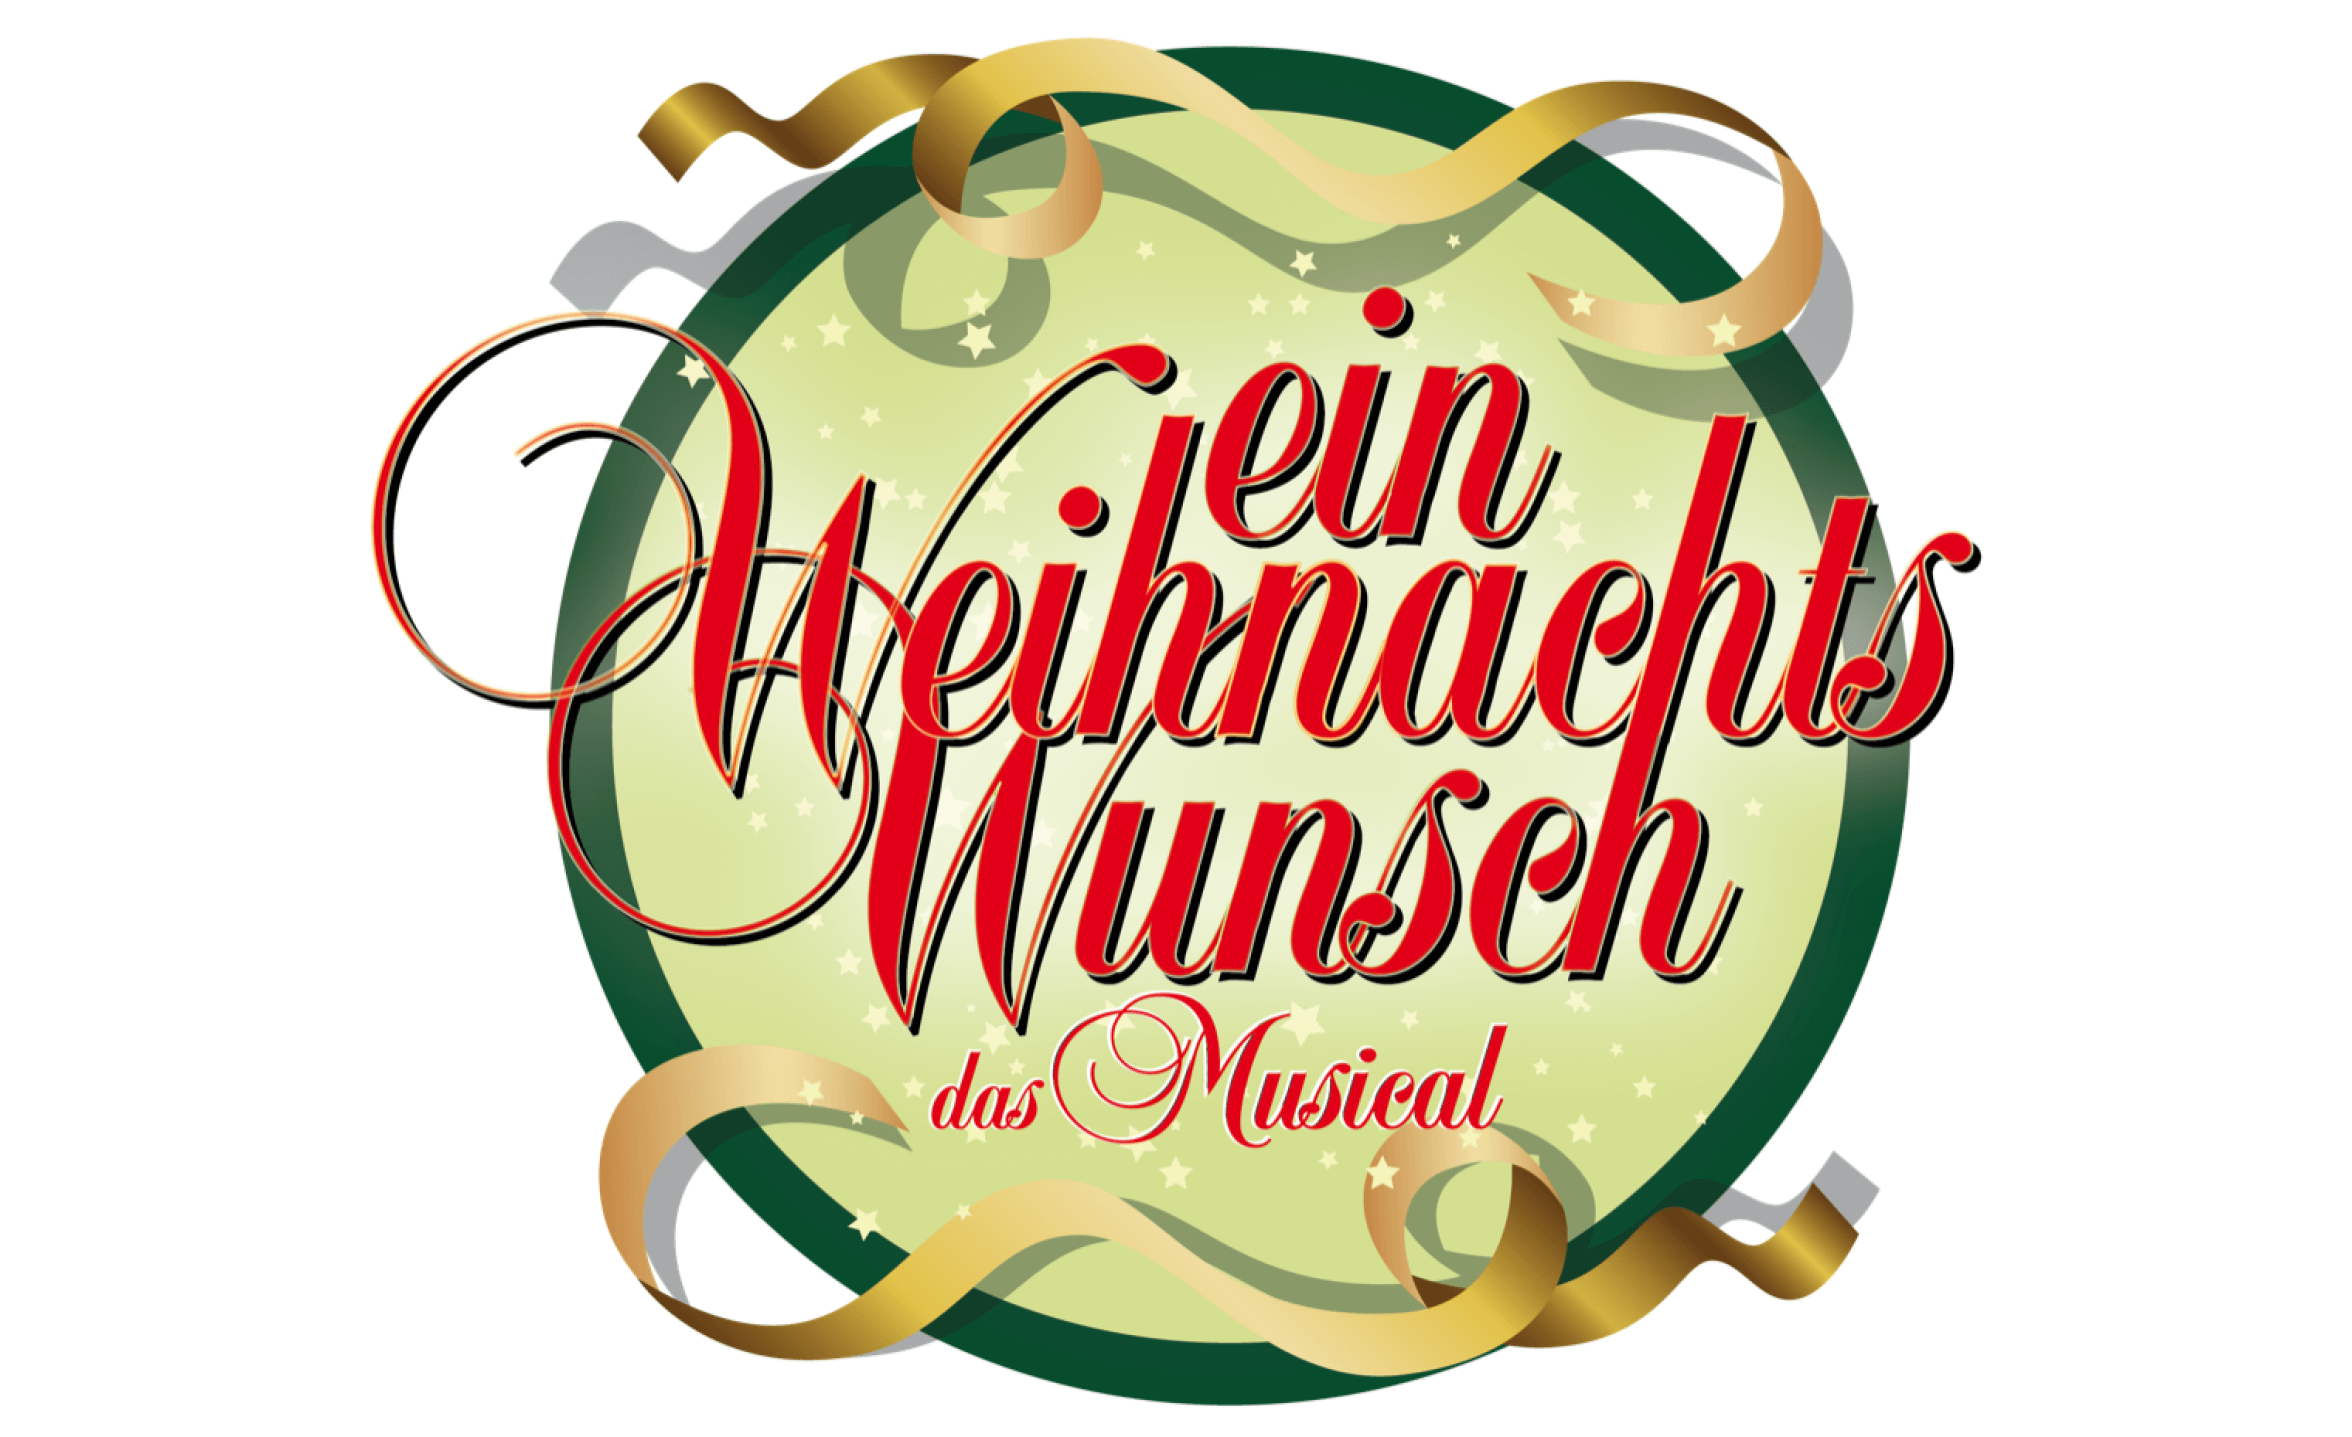 Event-Image for 'Ein Weihnachtswunsch - das Musical, 18.12.22 um 17:00 Uhr'